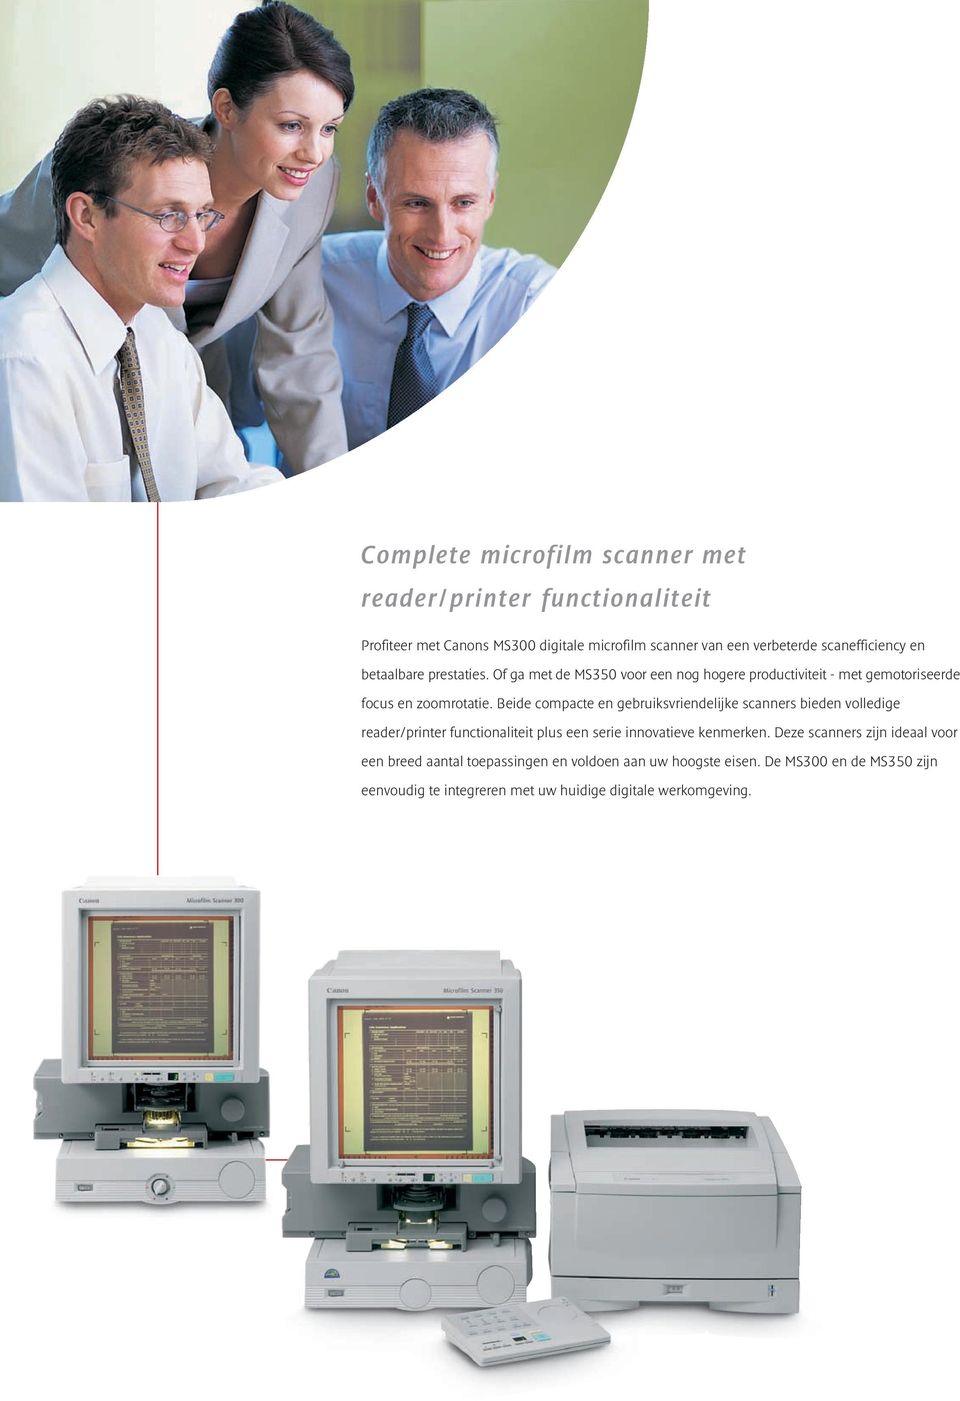 Beide compacte en gebruiksvriendelijke scanners bieden volledige reader/printer functionaliteit plus een serie innovatieve kenmerken.